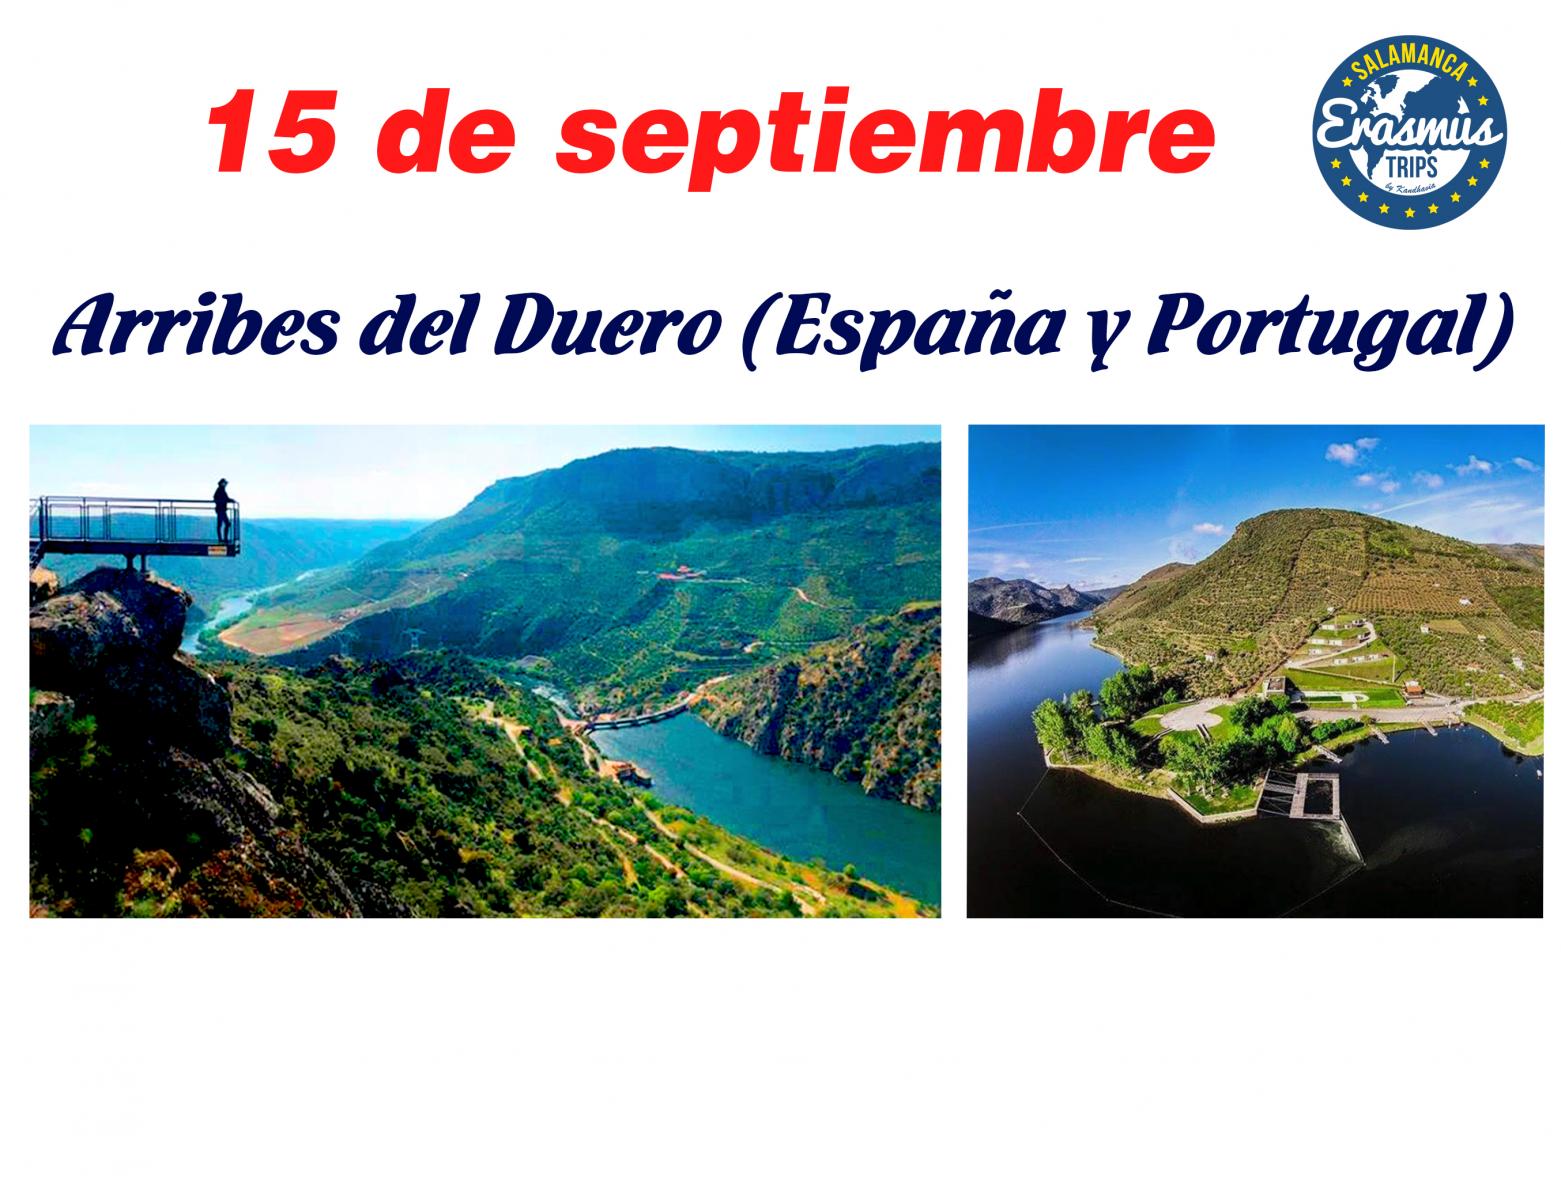  <strong> ARRIBES DEL DUERO (ESPAA Y PORTUGAL) # Domingo,  15 de septiembre